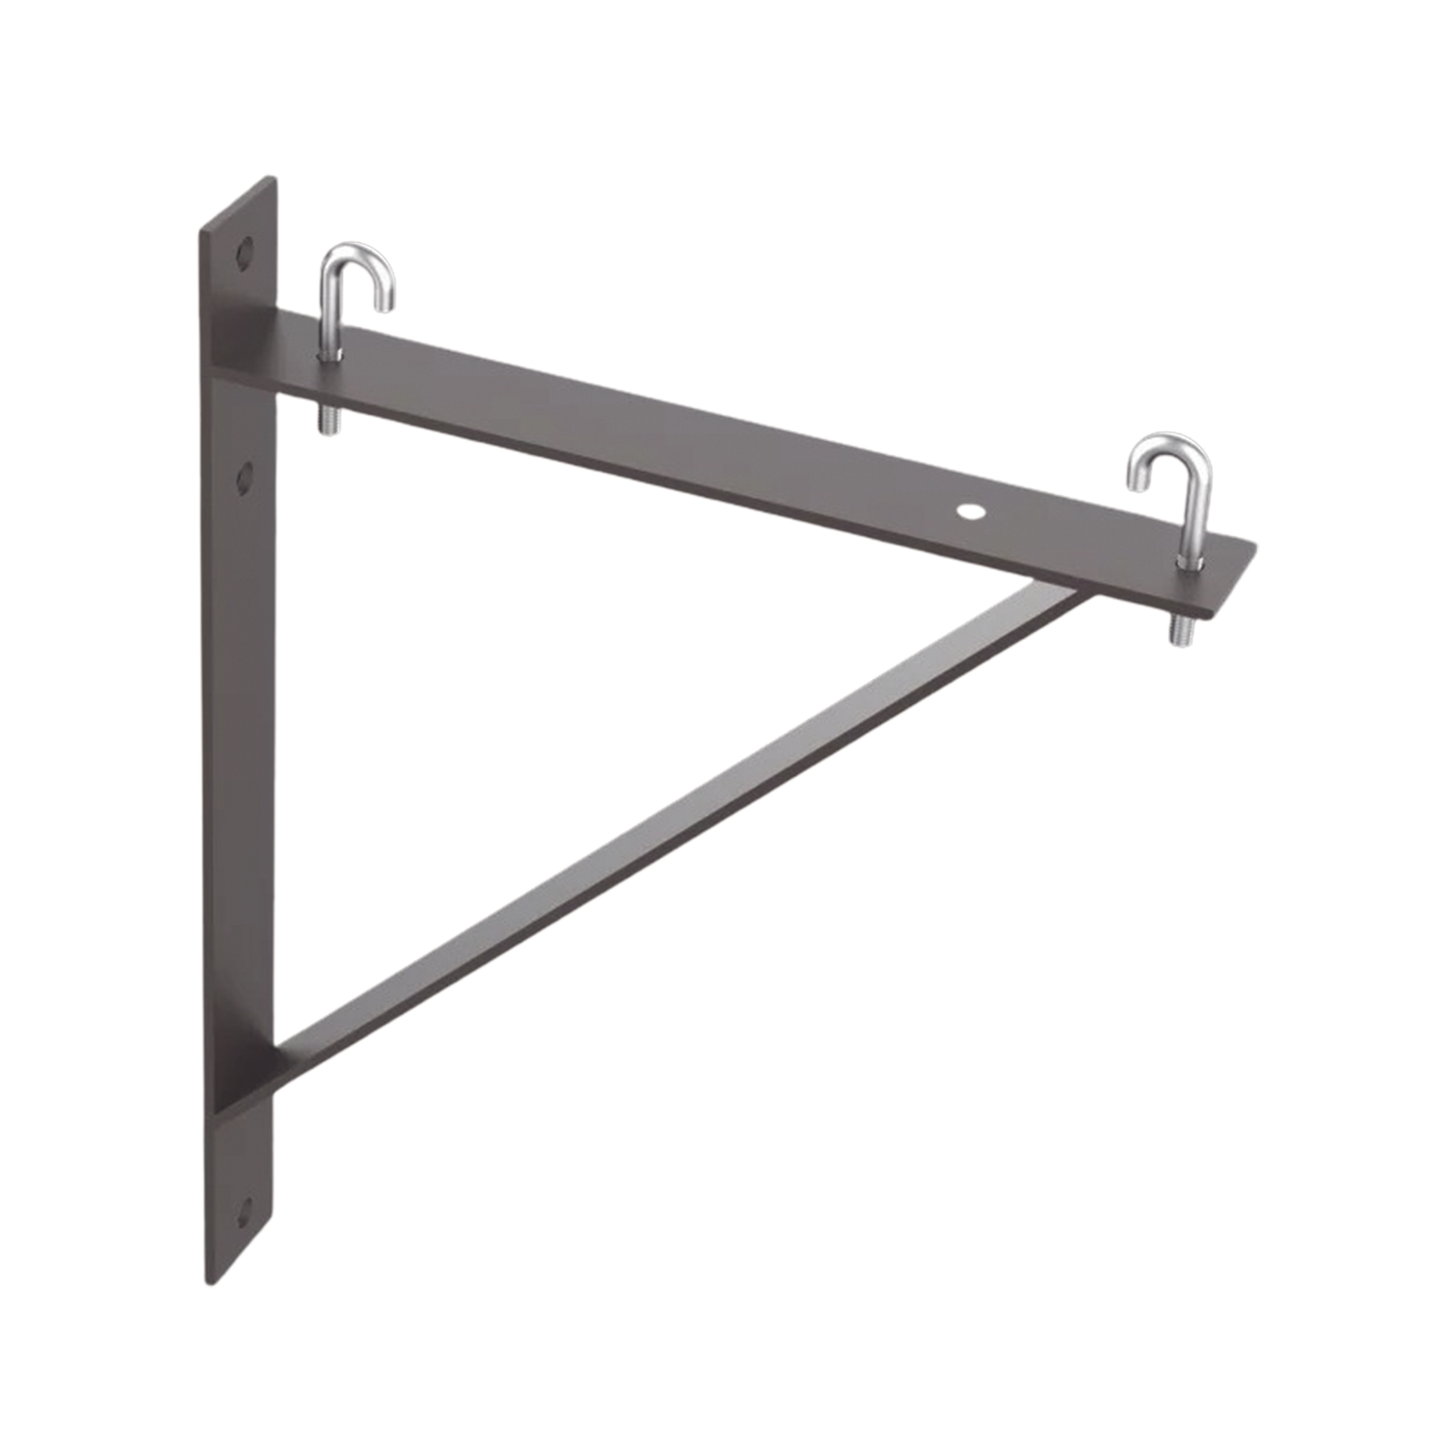 Kit de Soporte Triangular a Pared, Para Escalerillas de 12 y 6 in de Ancho, de Acero, Color Negro